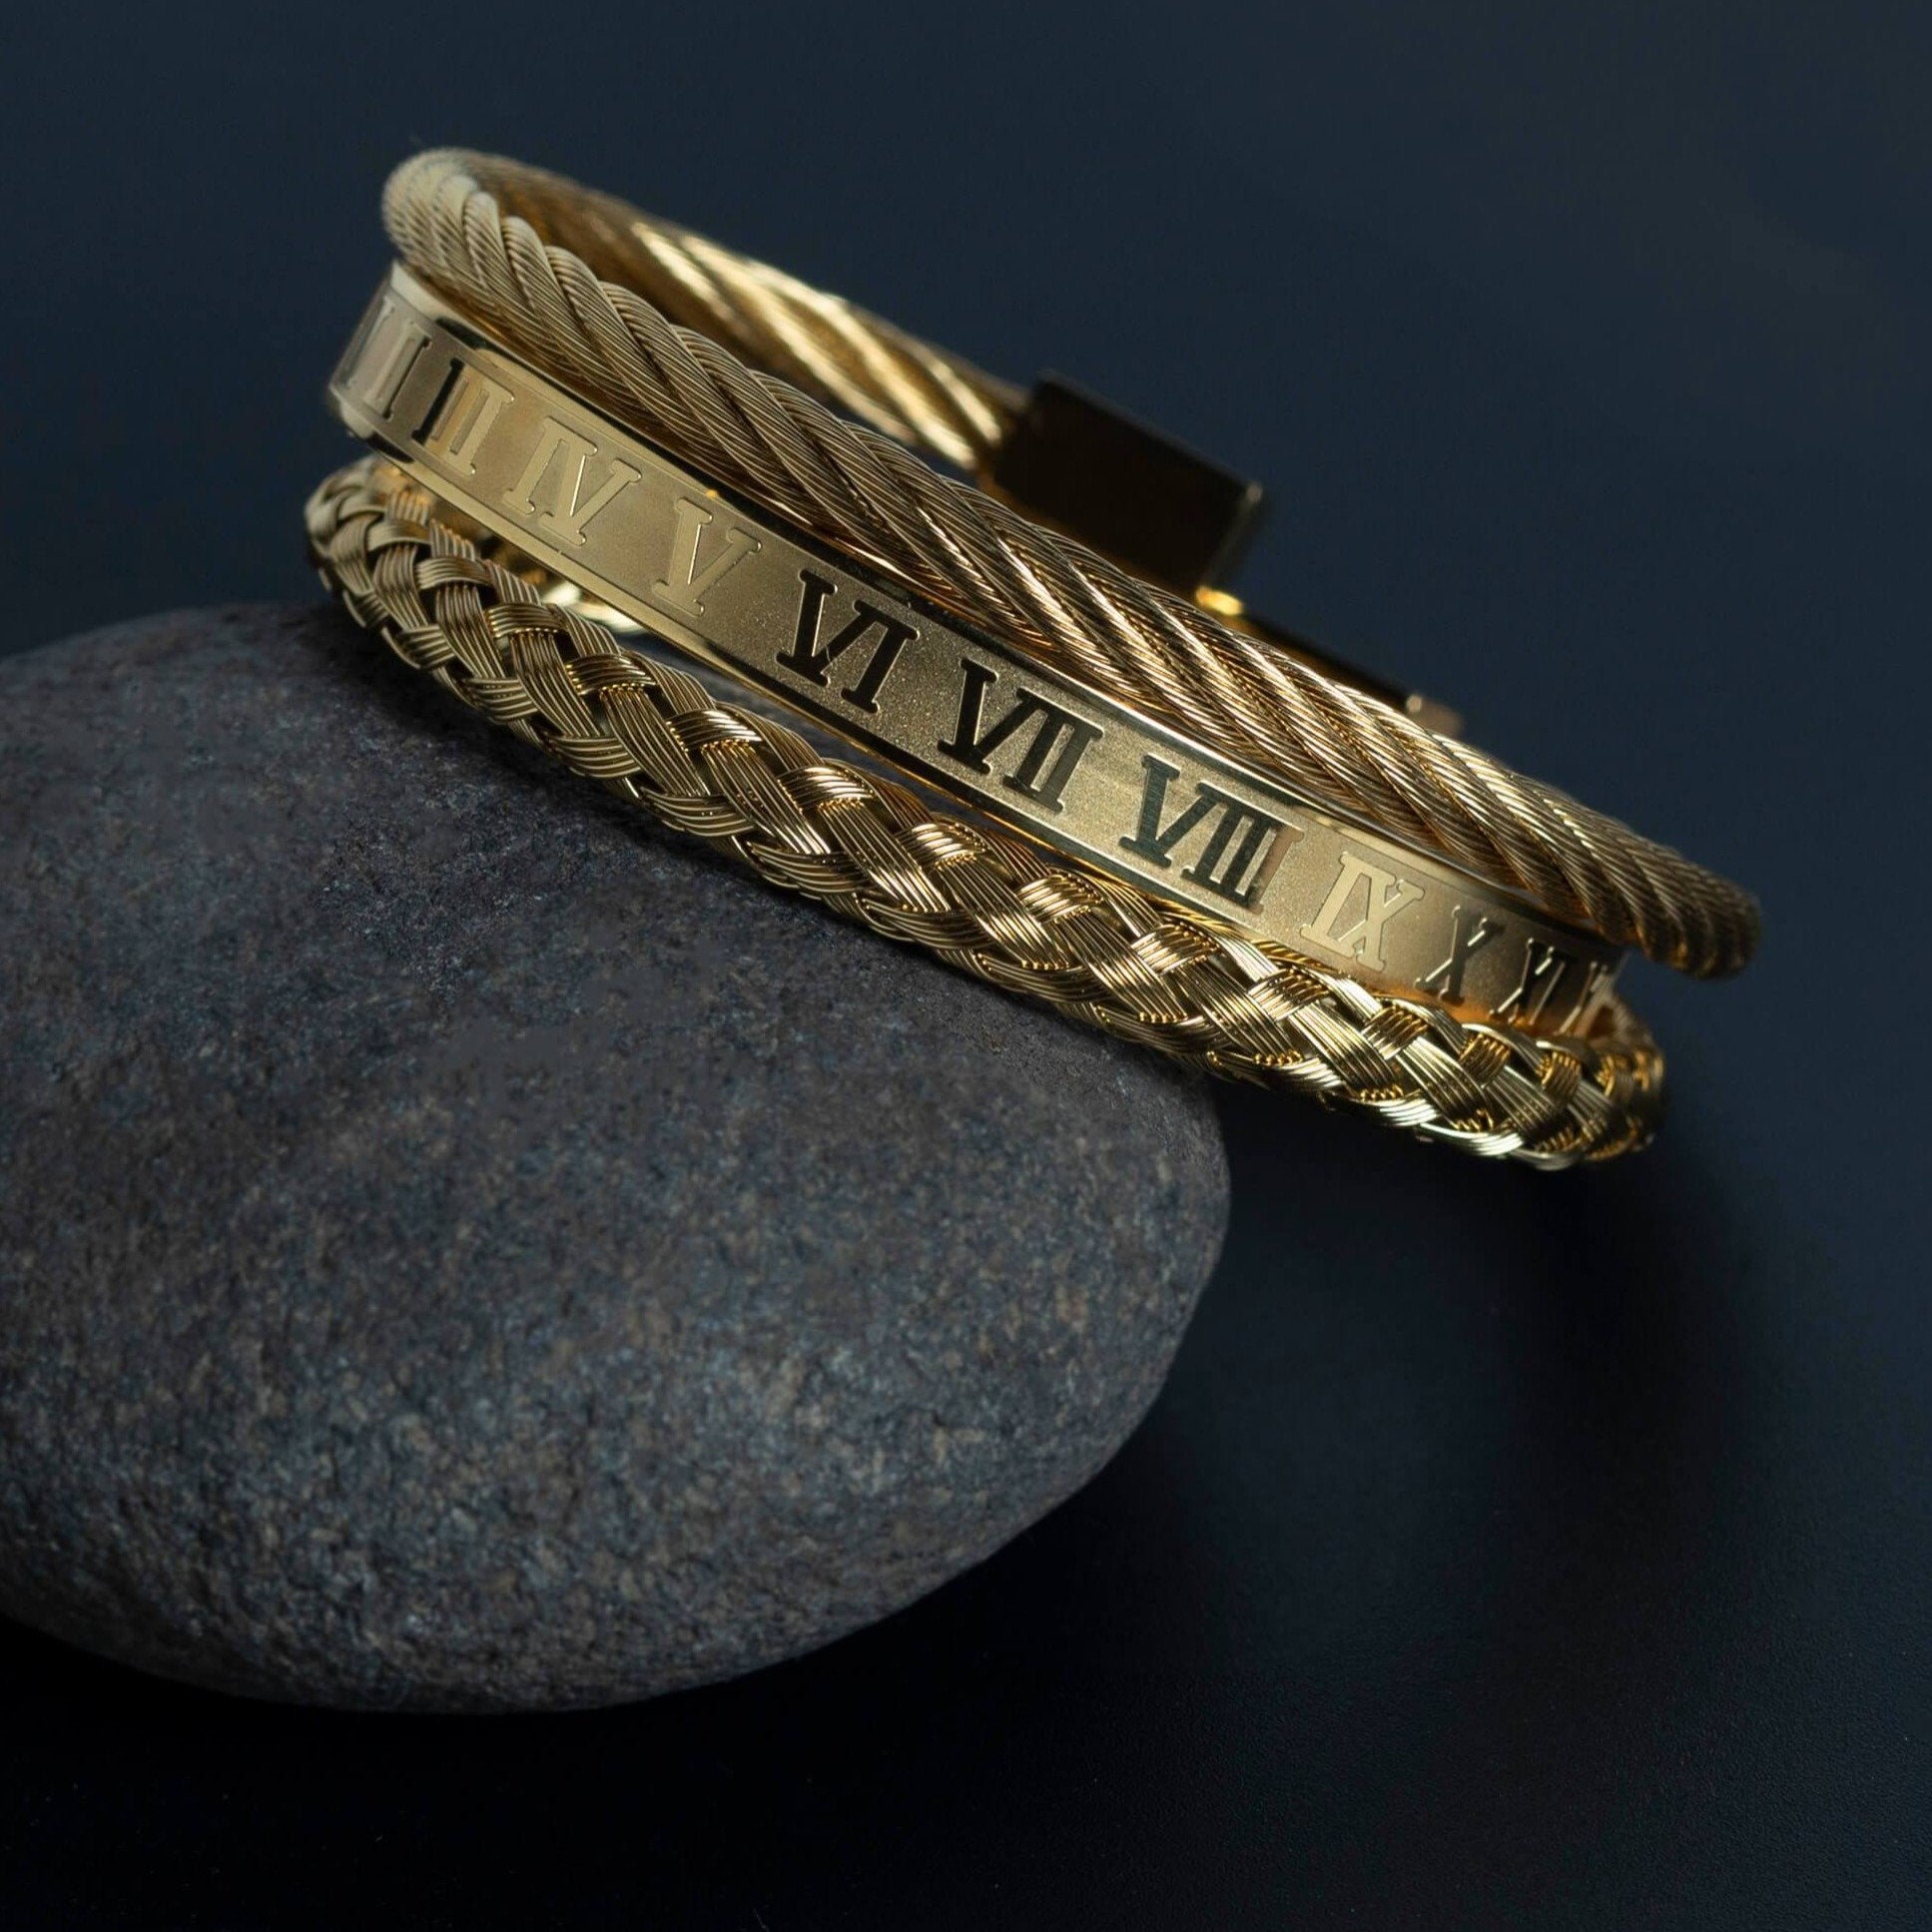 Golden Stainless Steel & Rhodium Roman Bracelet Set For Men